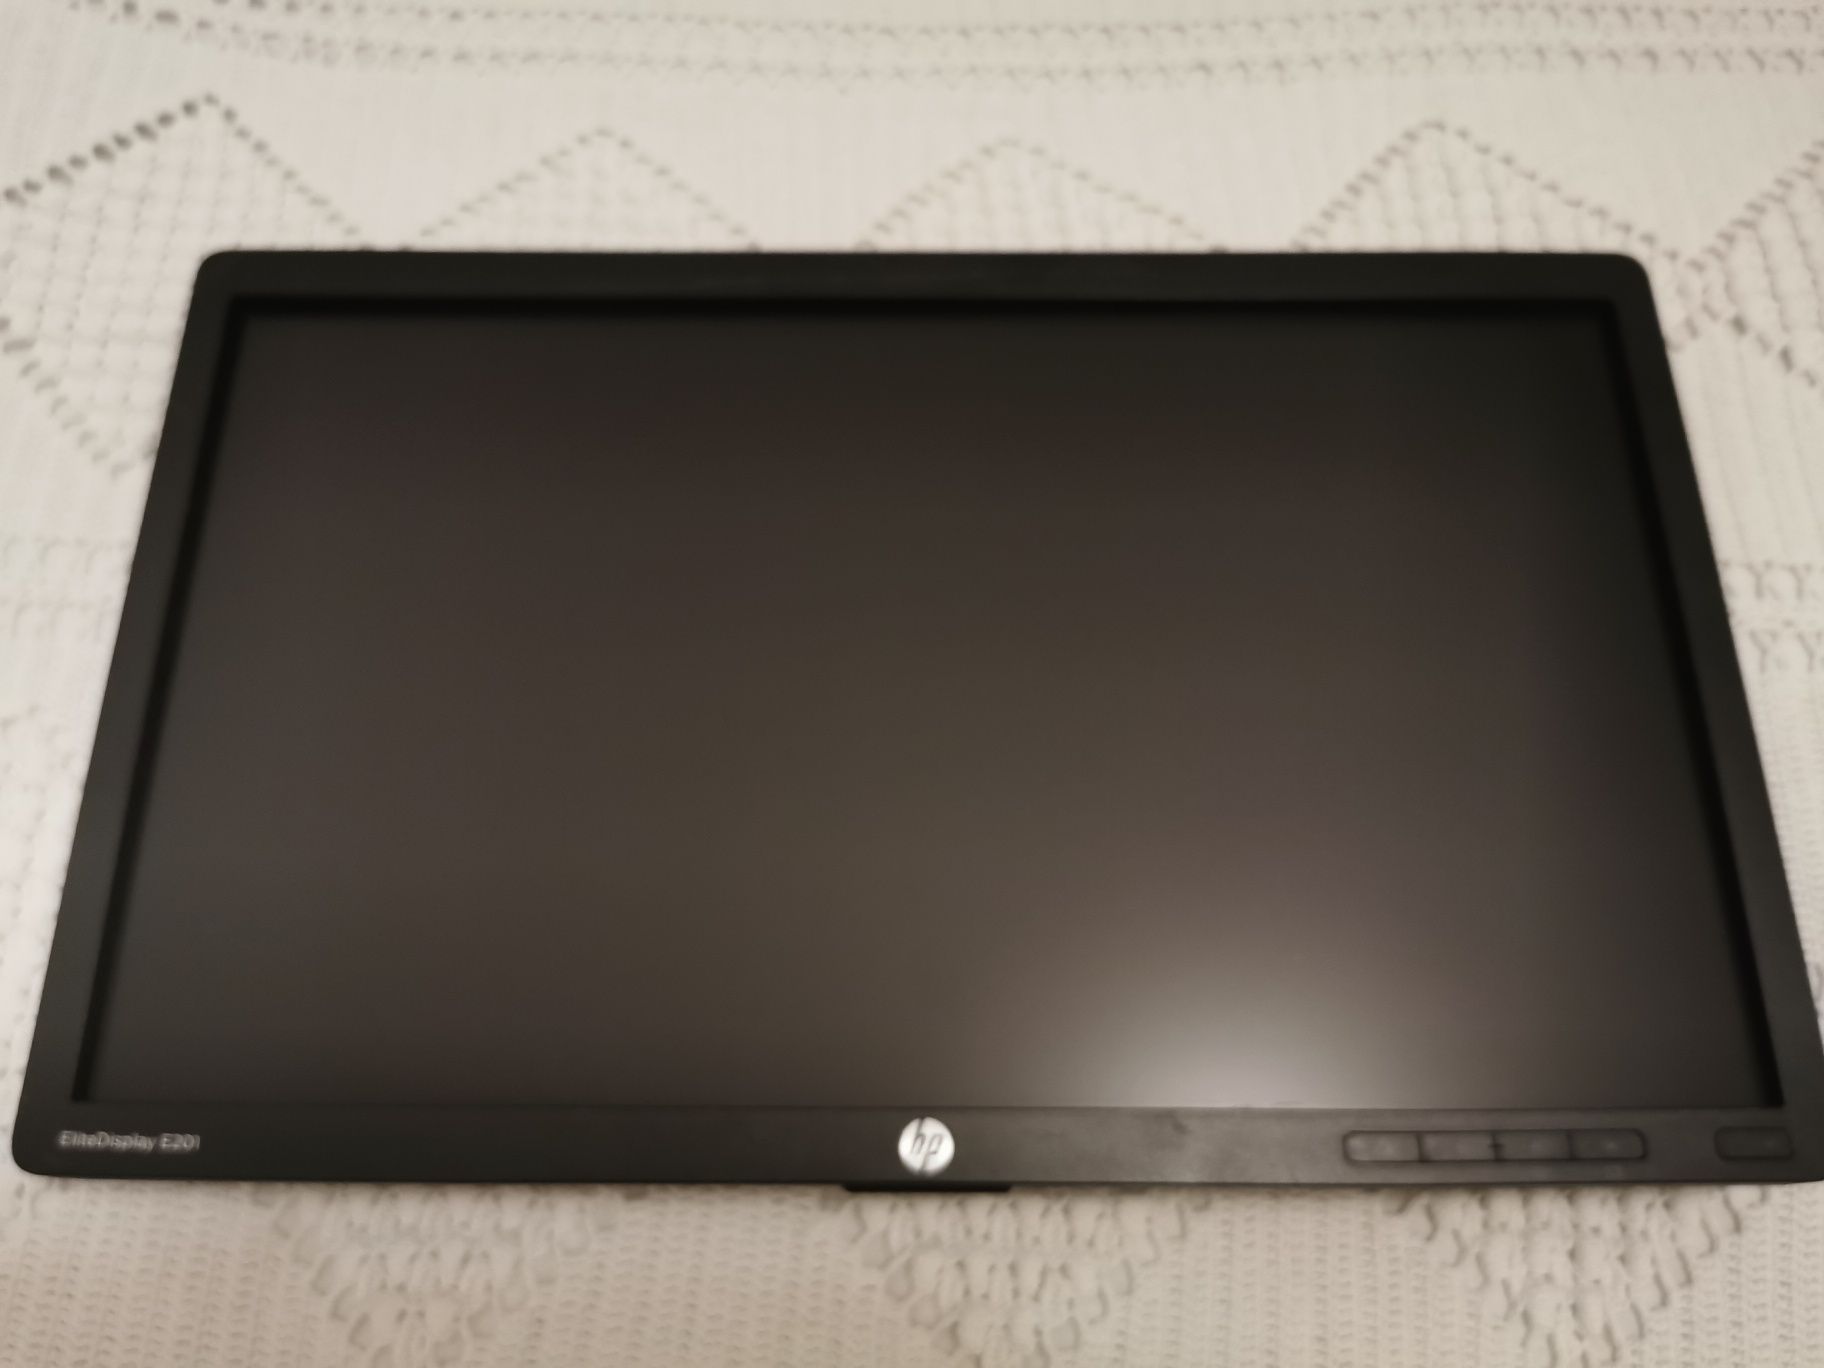 Monitor de LED HP Elite Display E201